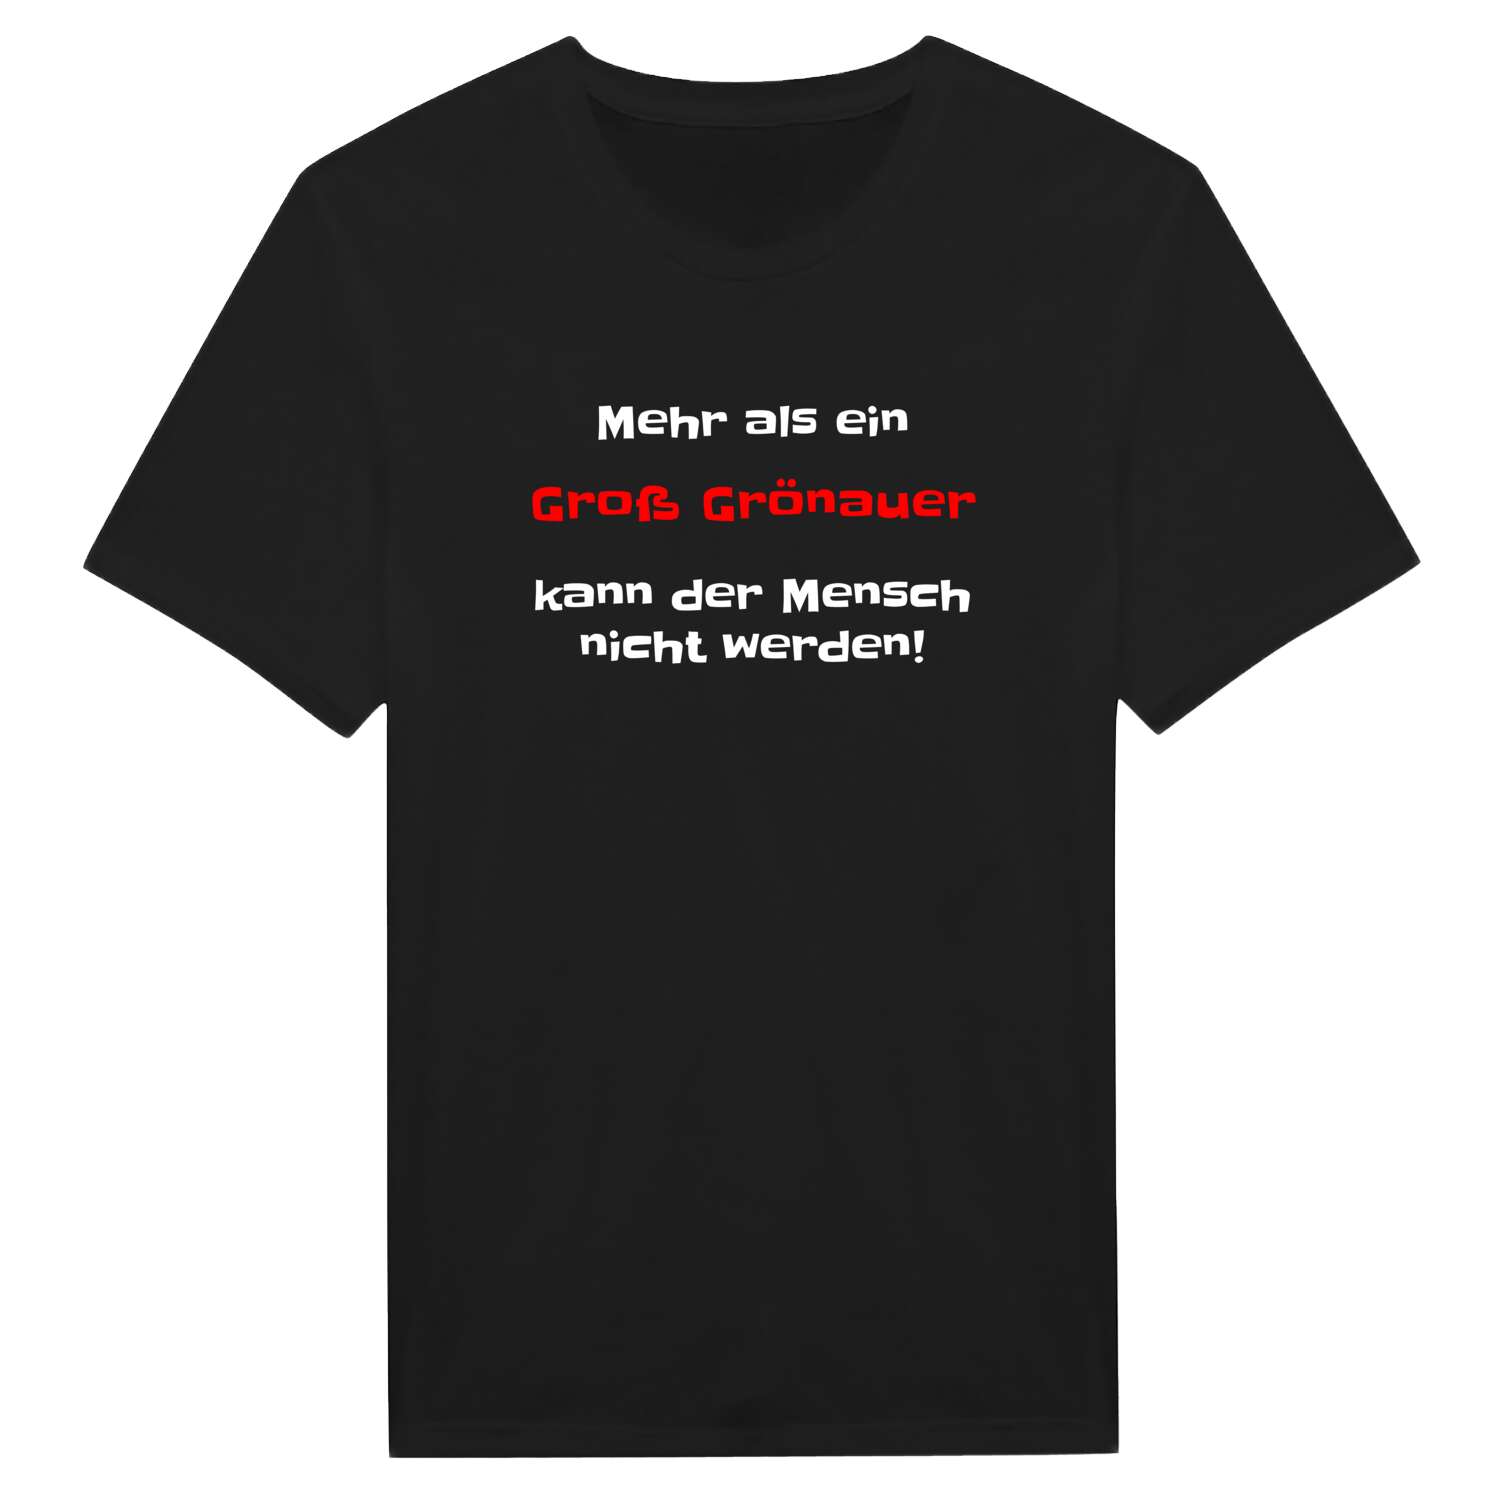 Groß Grönau T-Shirt »Mehr als ein«